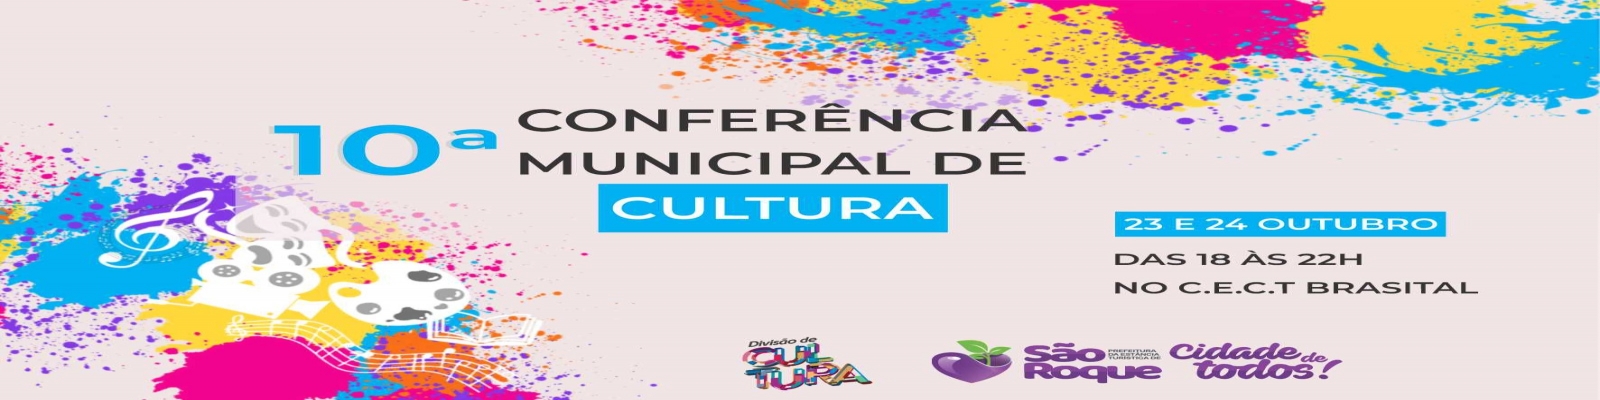 Banner 10-conferencia-municipal-de-cultura-dias-23-e-24-de-outubro-das-18h-as-22h